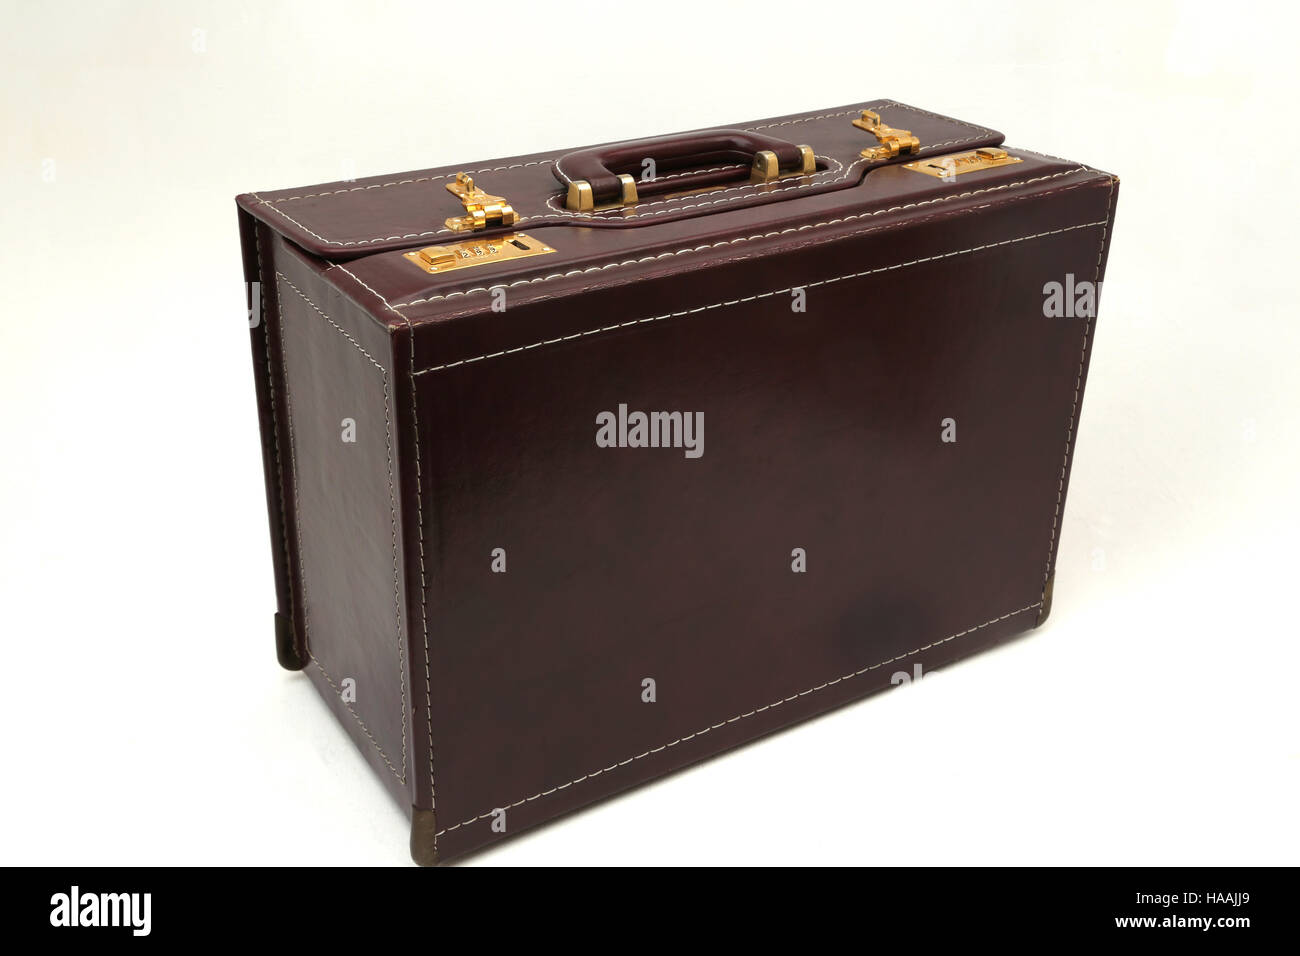 SAMSONITE Aktentasche mit Zahlenschloss Stockfotografie - Alamy